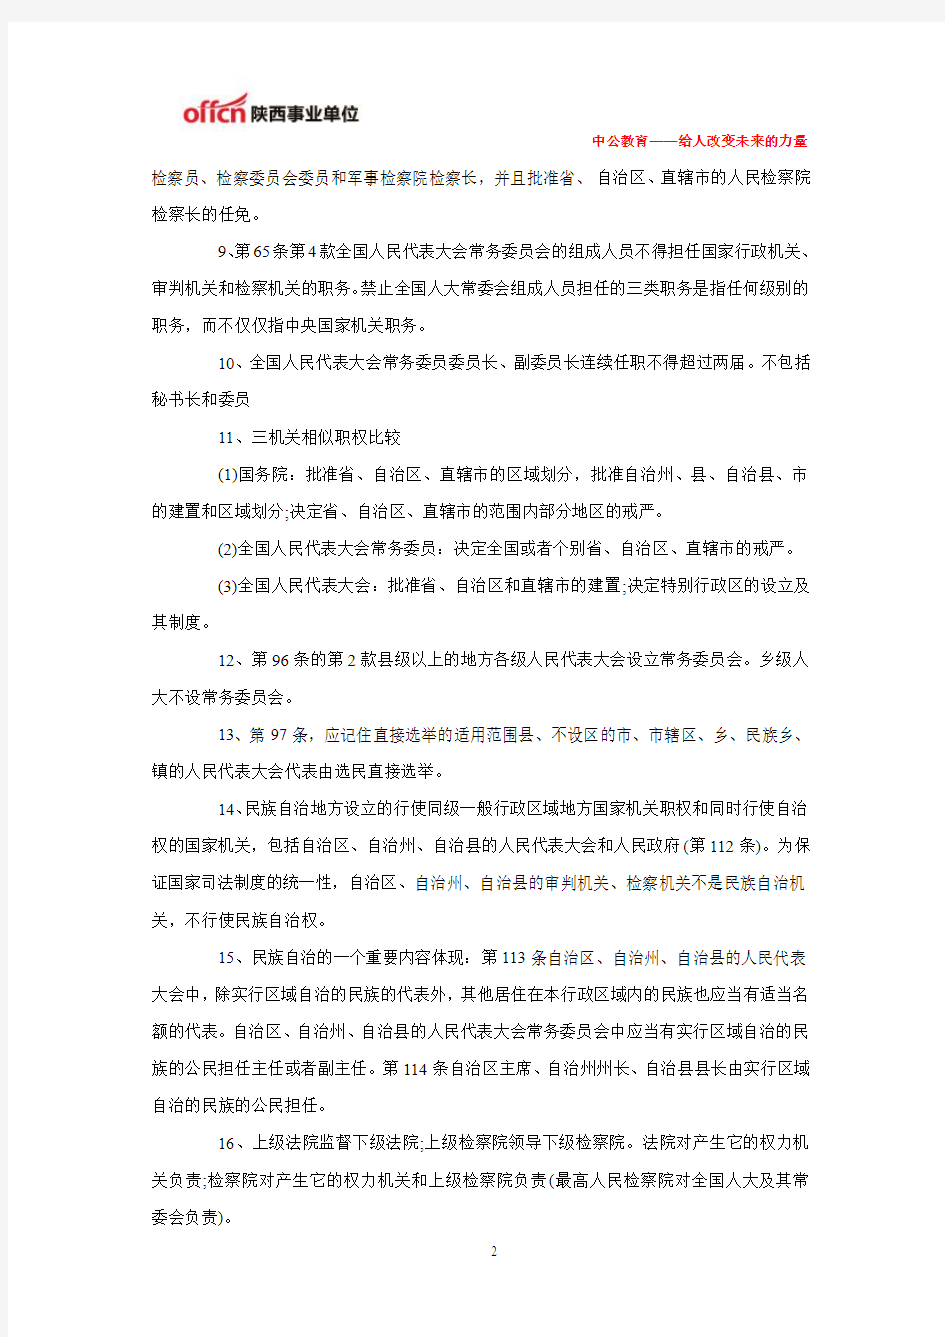 2014杨凌事业单位笔试法律常识部分之宪法易混淆知识点